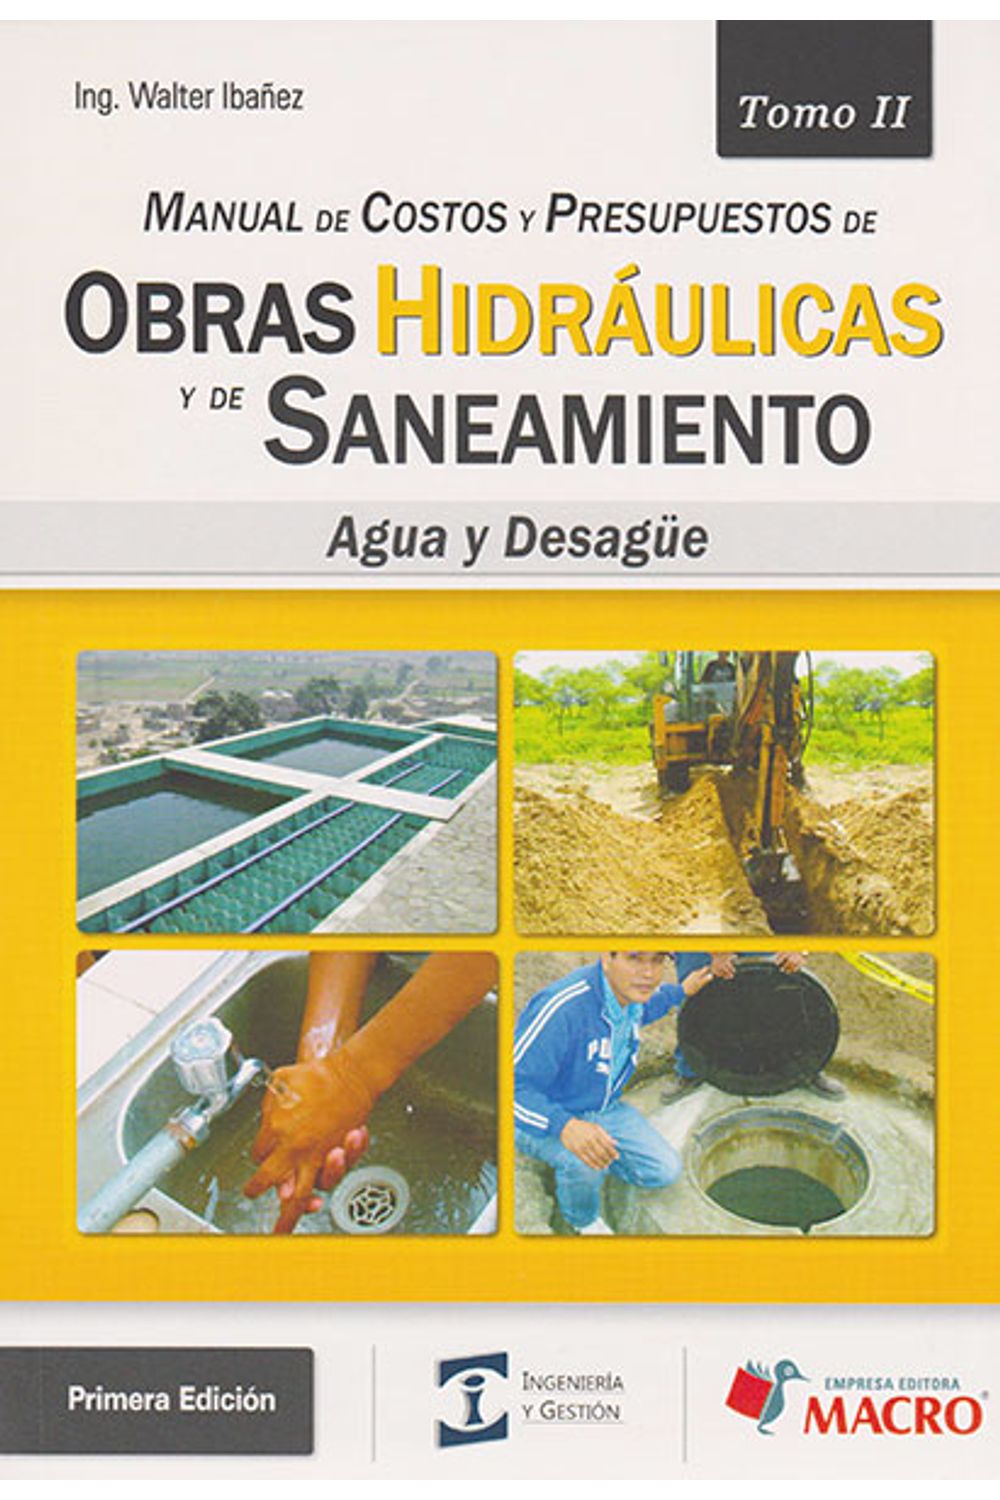 manual-de-costos-y-presupuestos-de-obras-hidraulicas-y-de-saneamiento-agua-y-desague-tomo-2-9786123040673-elog